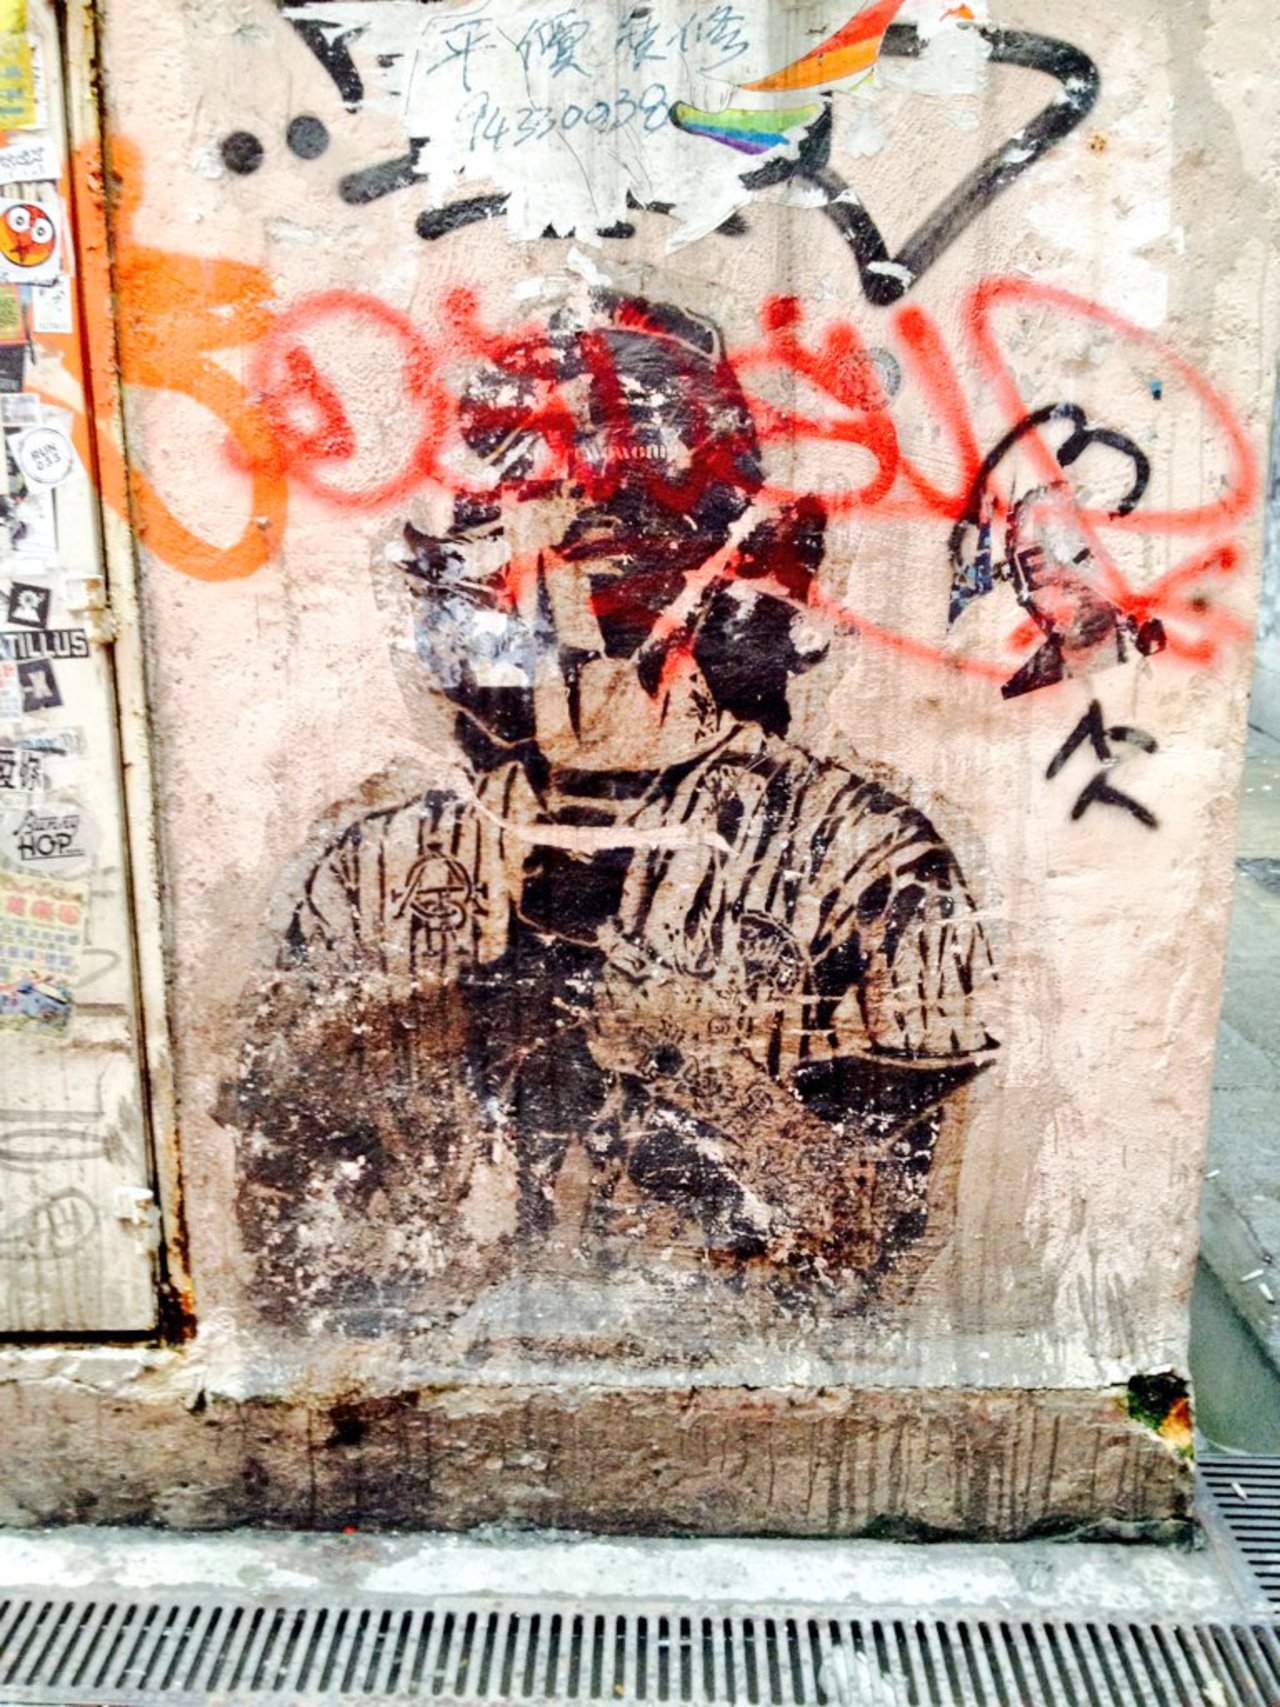 Defaced face, Causeway Bay
#streetart #urbanart #stencil #stencilart #graffiti #HongKong #China #streetphotography https://t.co/1vC4Etpeng